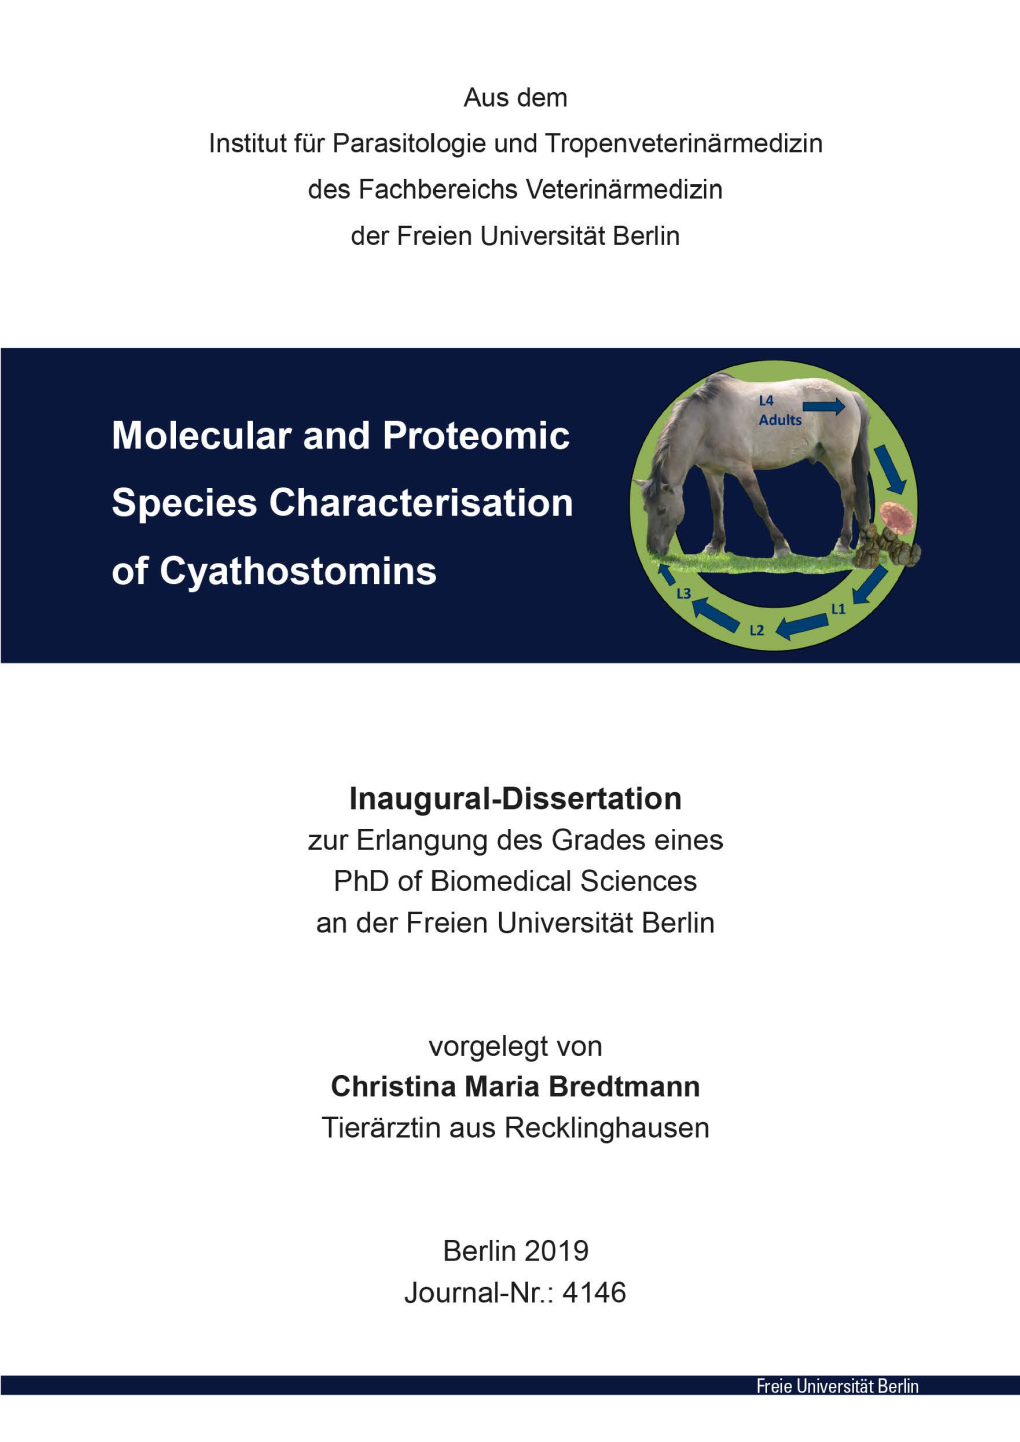 Lnaugural-Dissertation Zur Erlangung Des Grades Eines Phd of Biomedical Sciences an Der Freien Universität Berlin